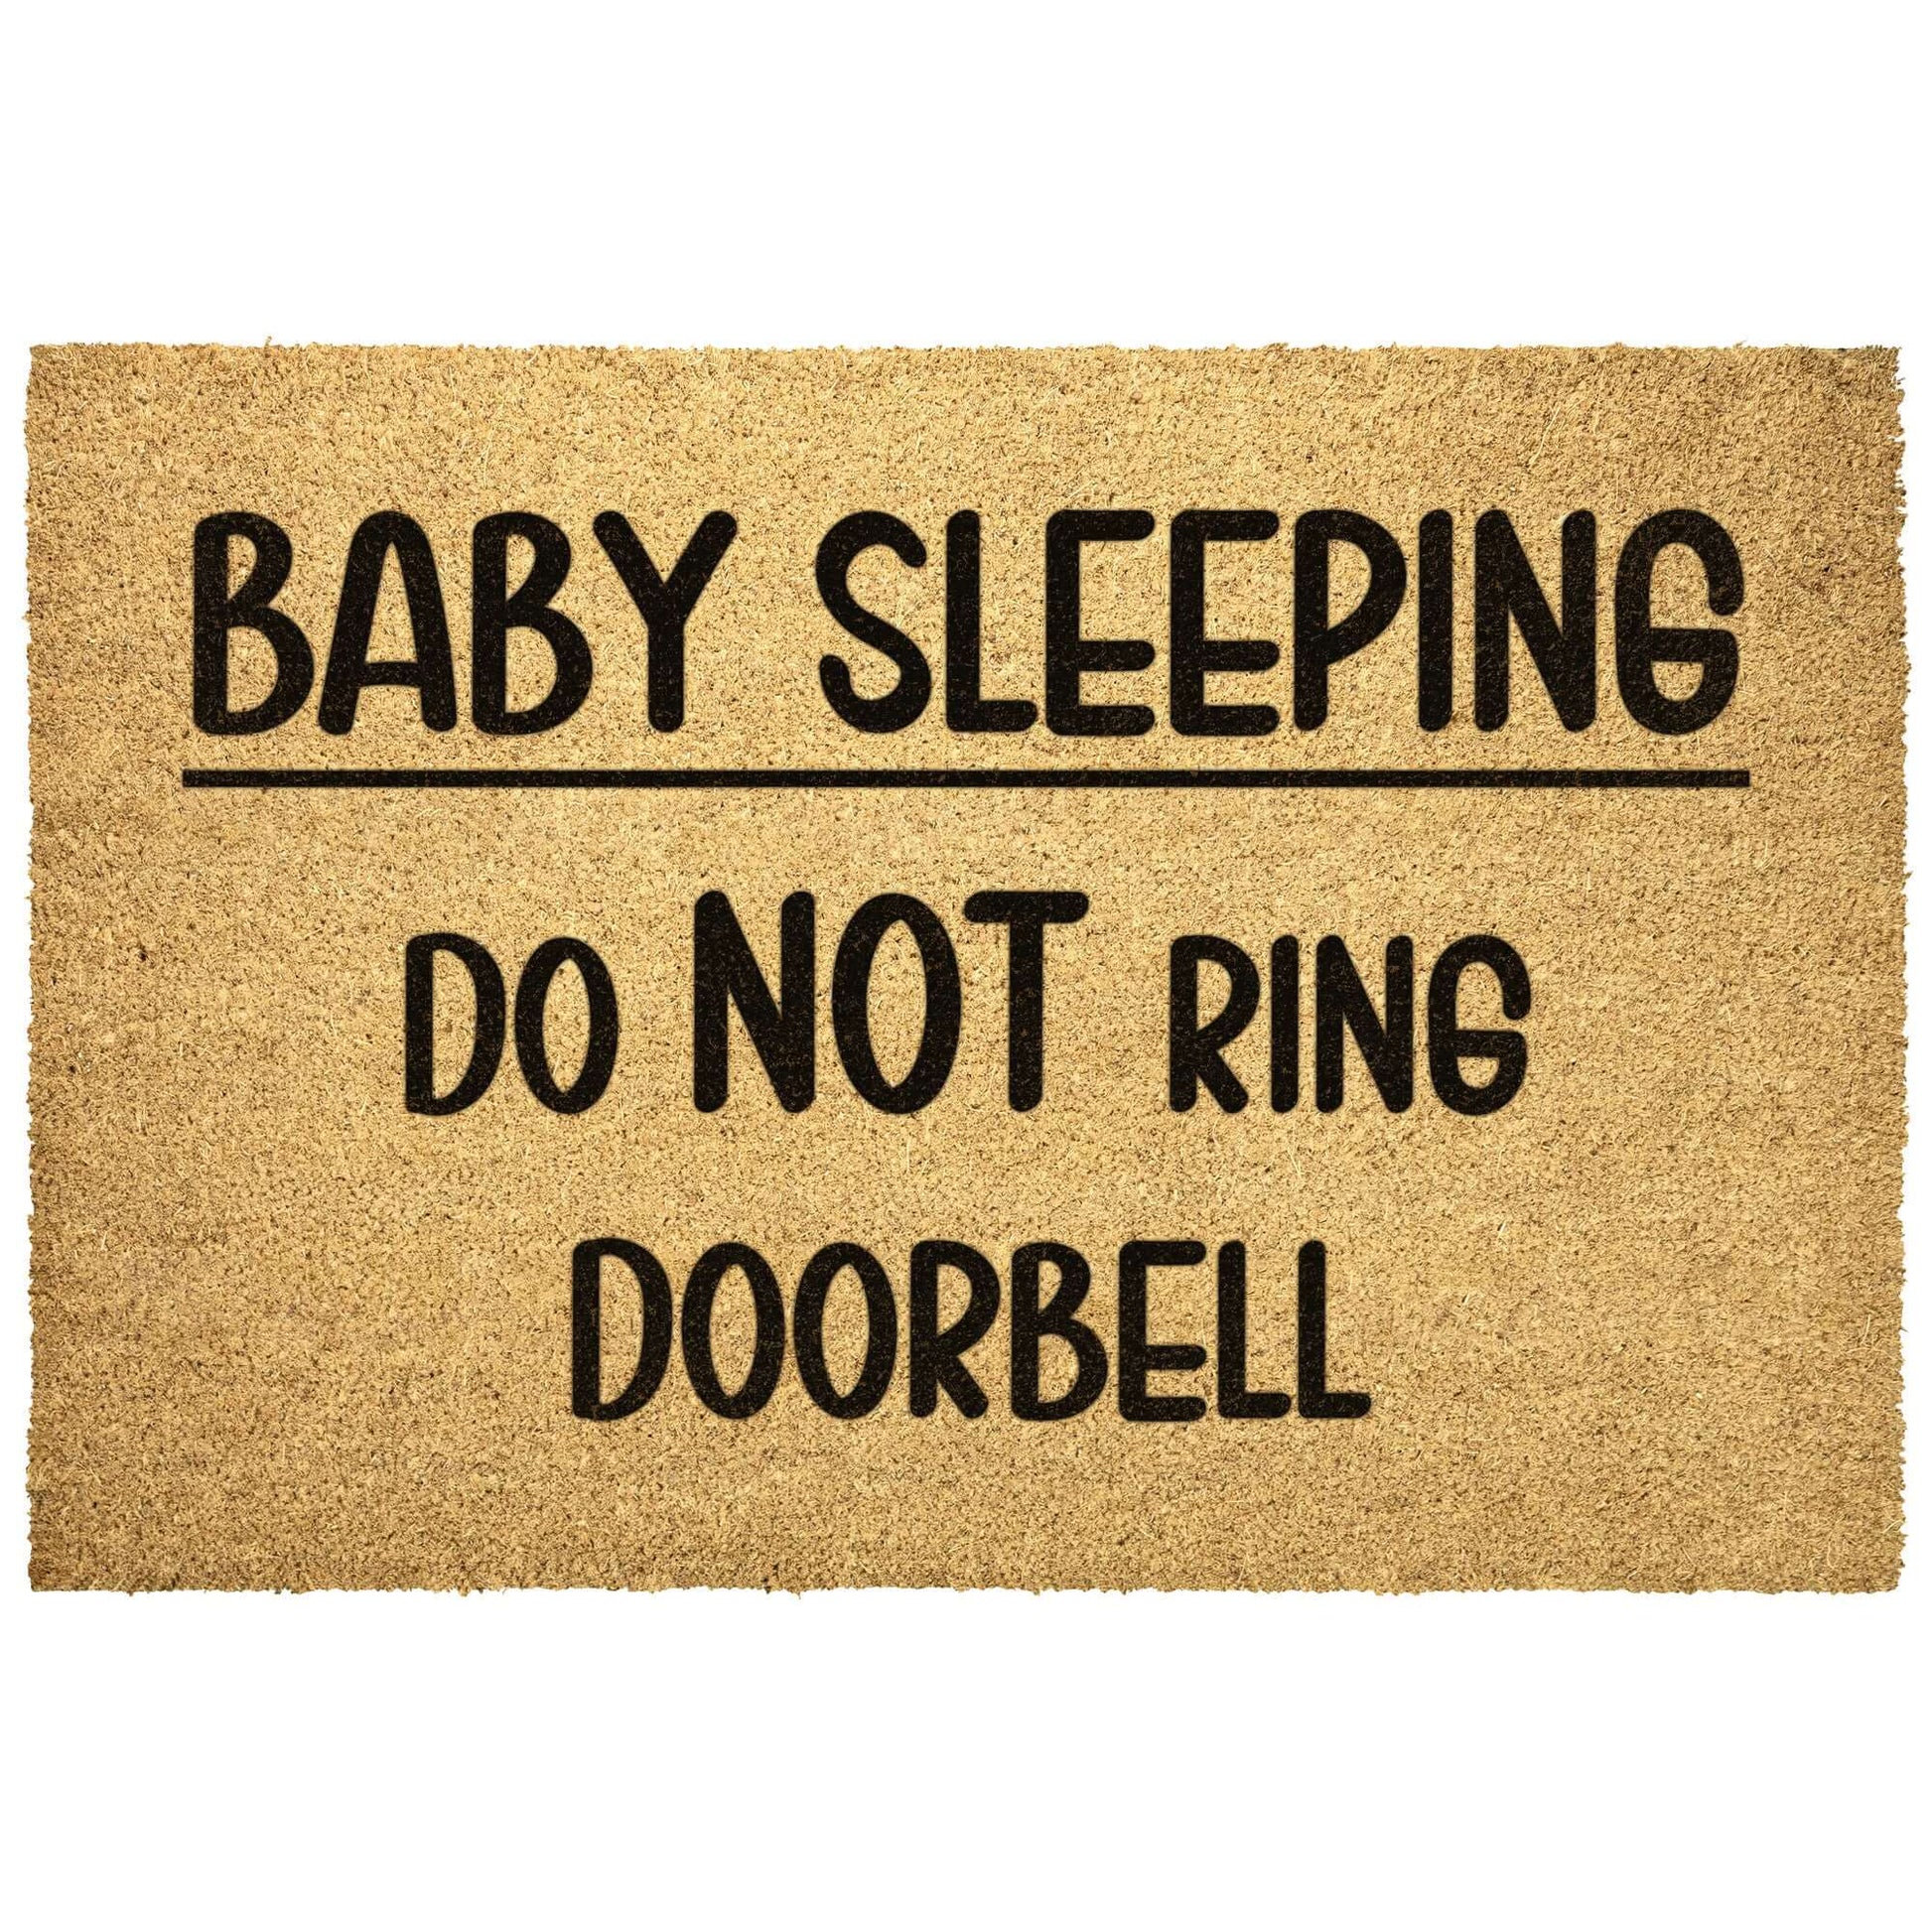 Outdoor doormat with the words Baby sleeping do NOT ring doorbell printed on it.